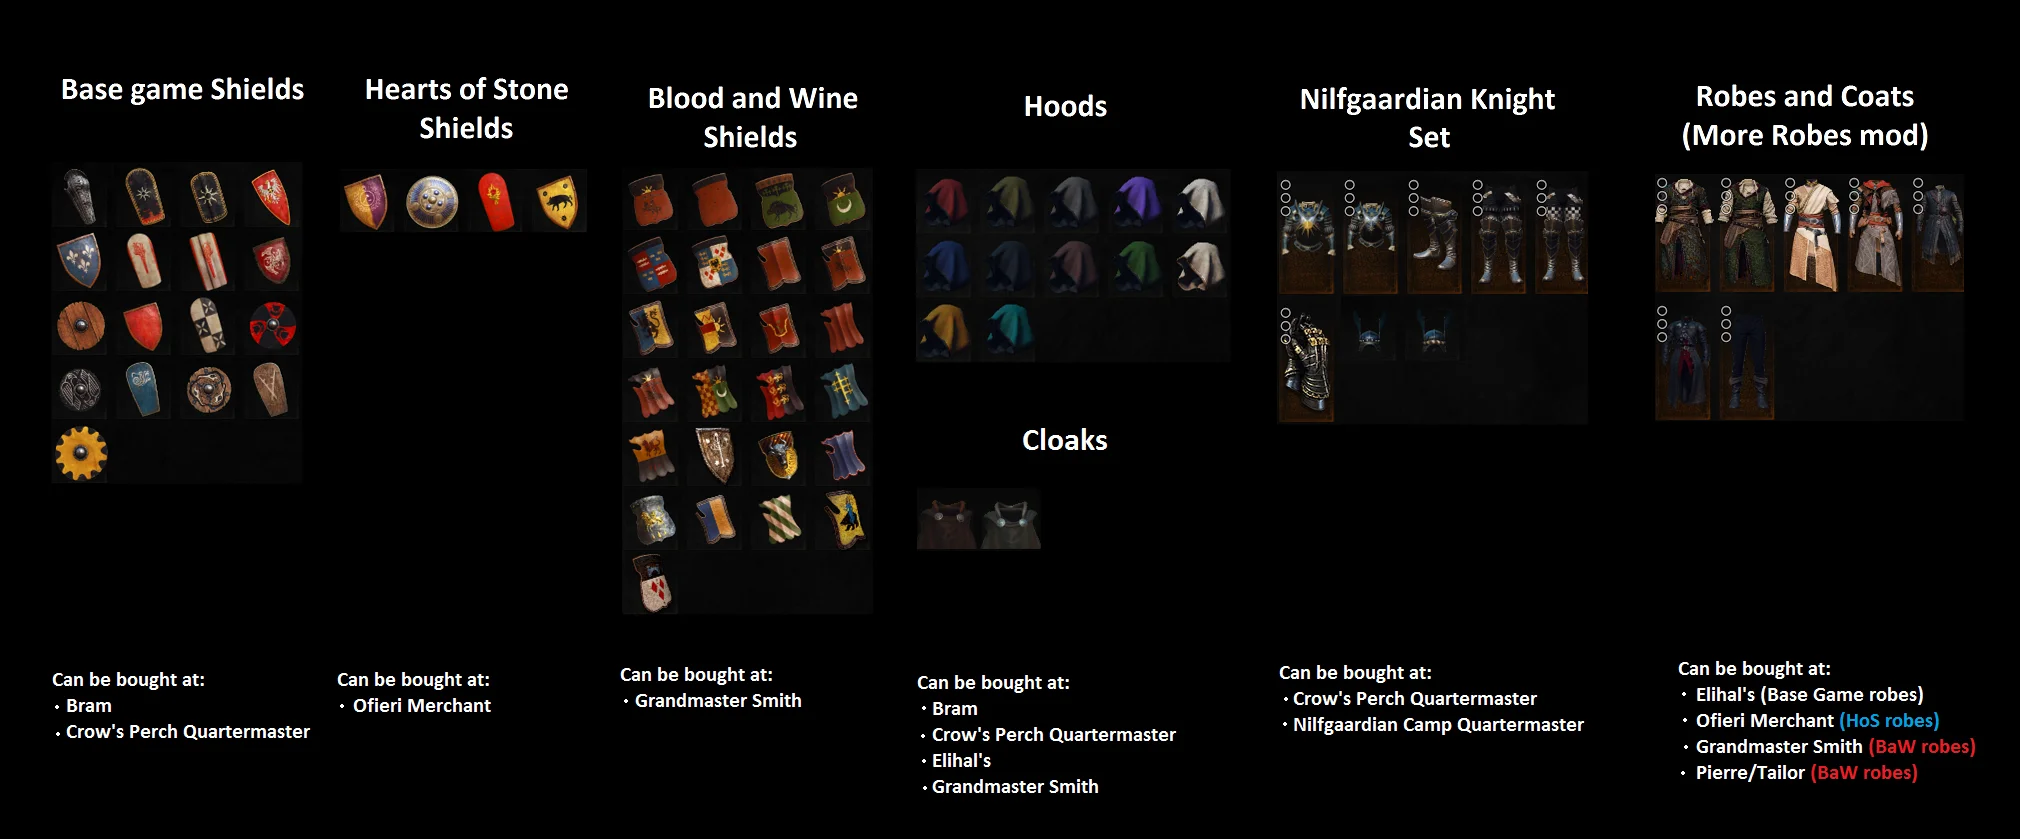 Не канон! Мод для The Witcher 3 позволяет Геральту носить щиты - фото 2